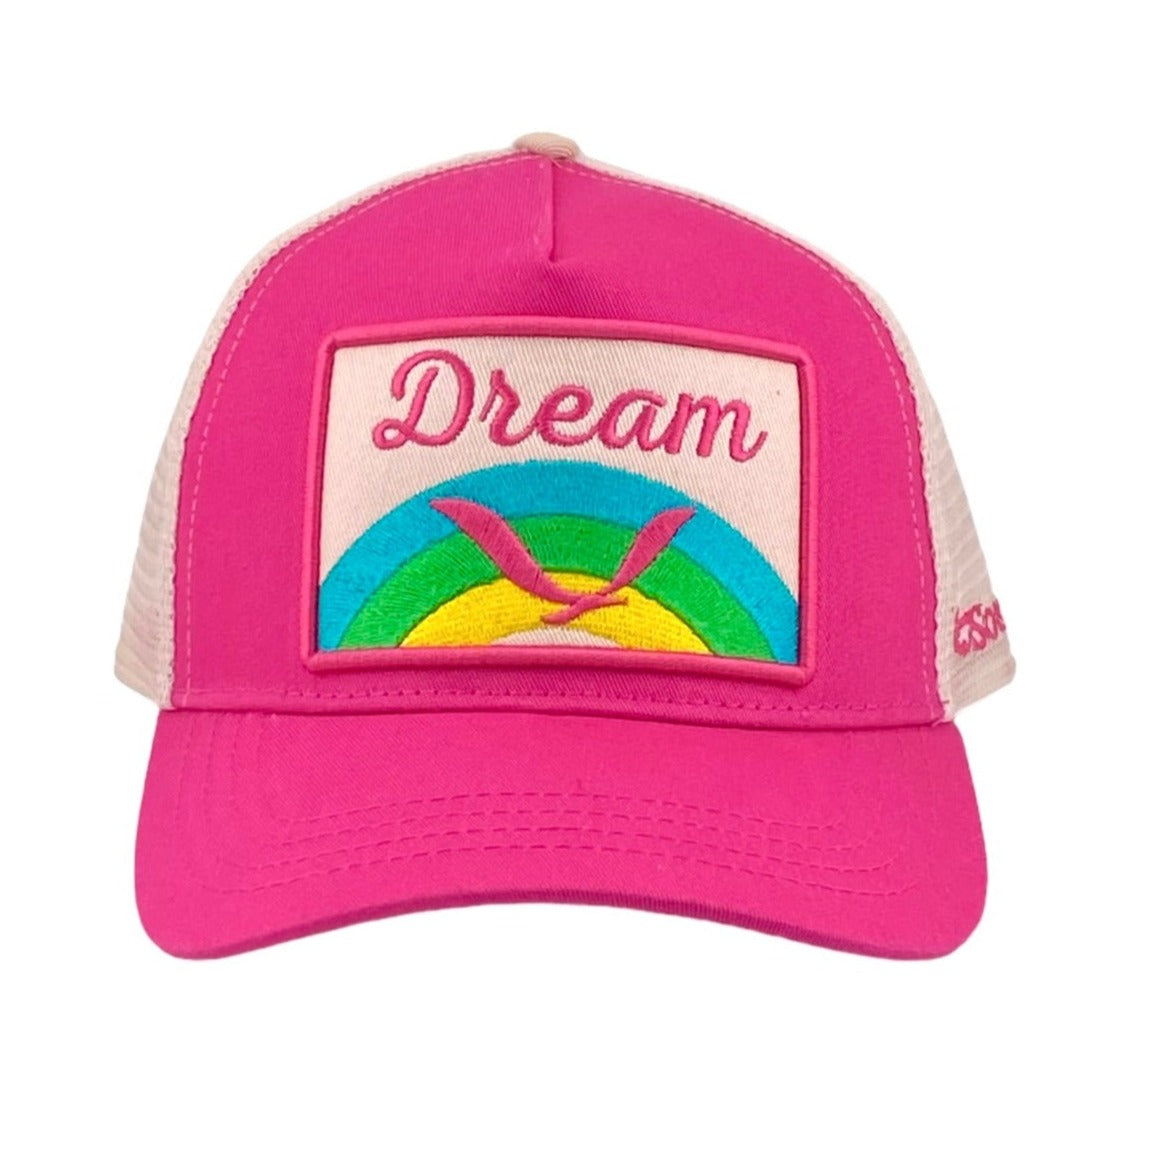 Dream Trucker - Hot Pink